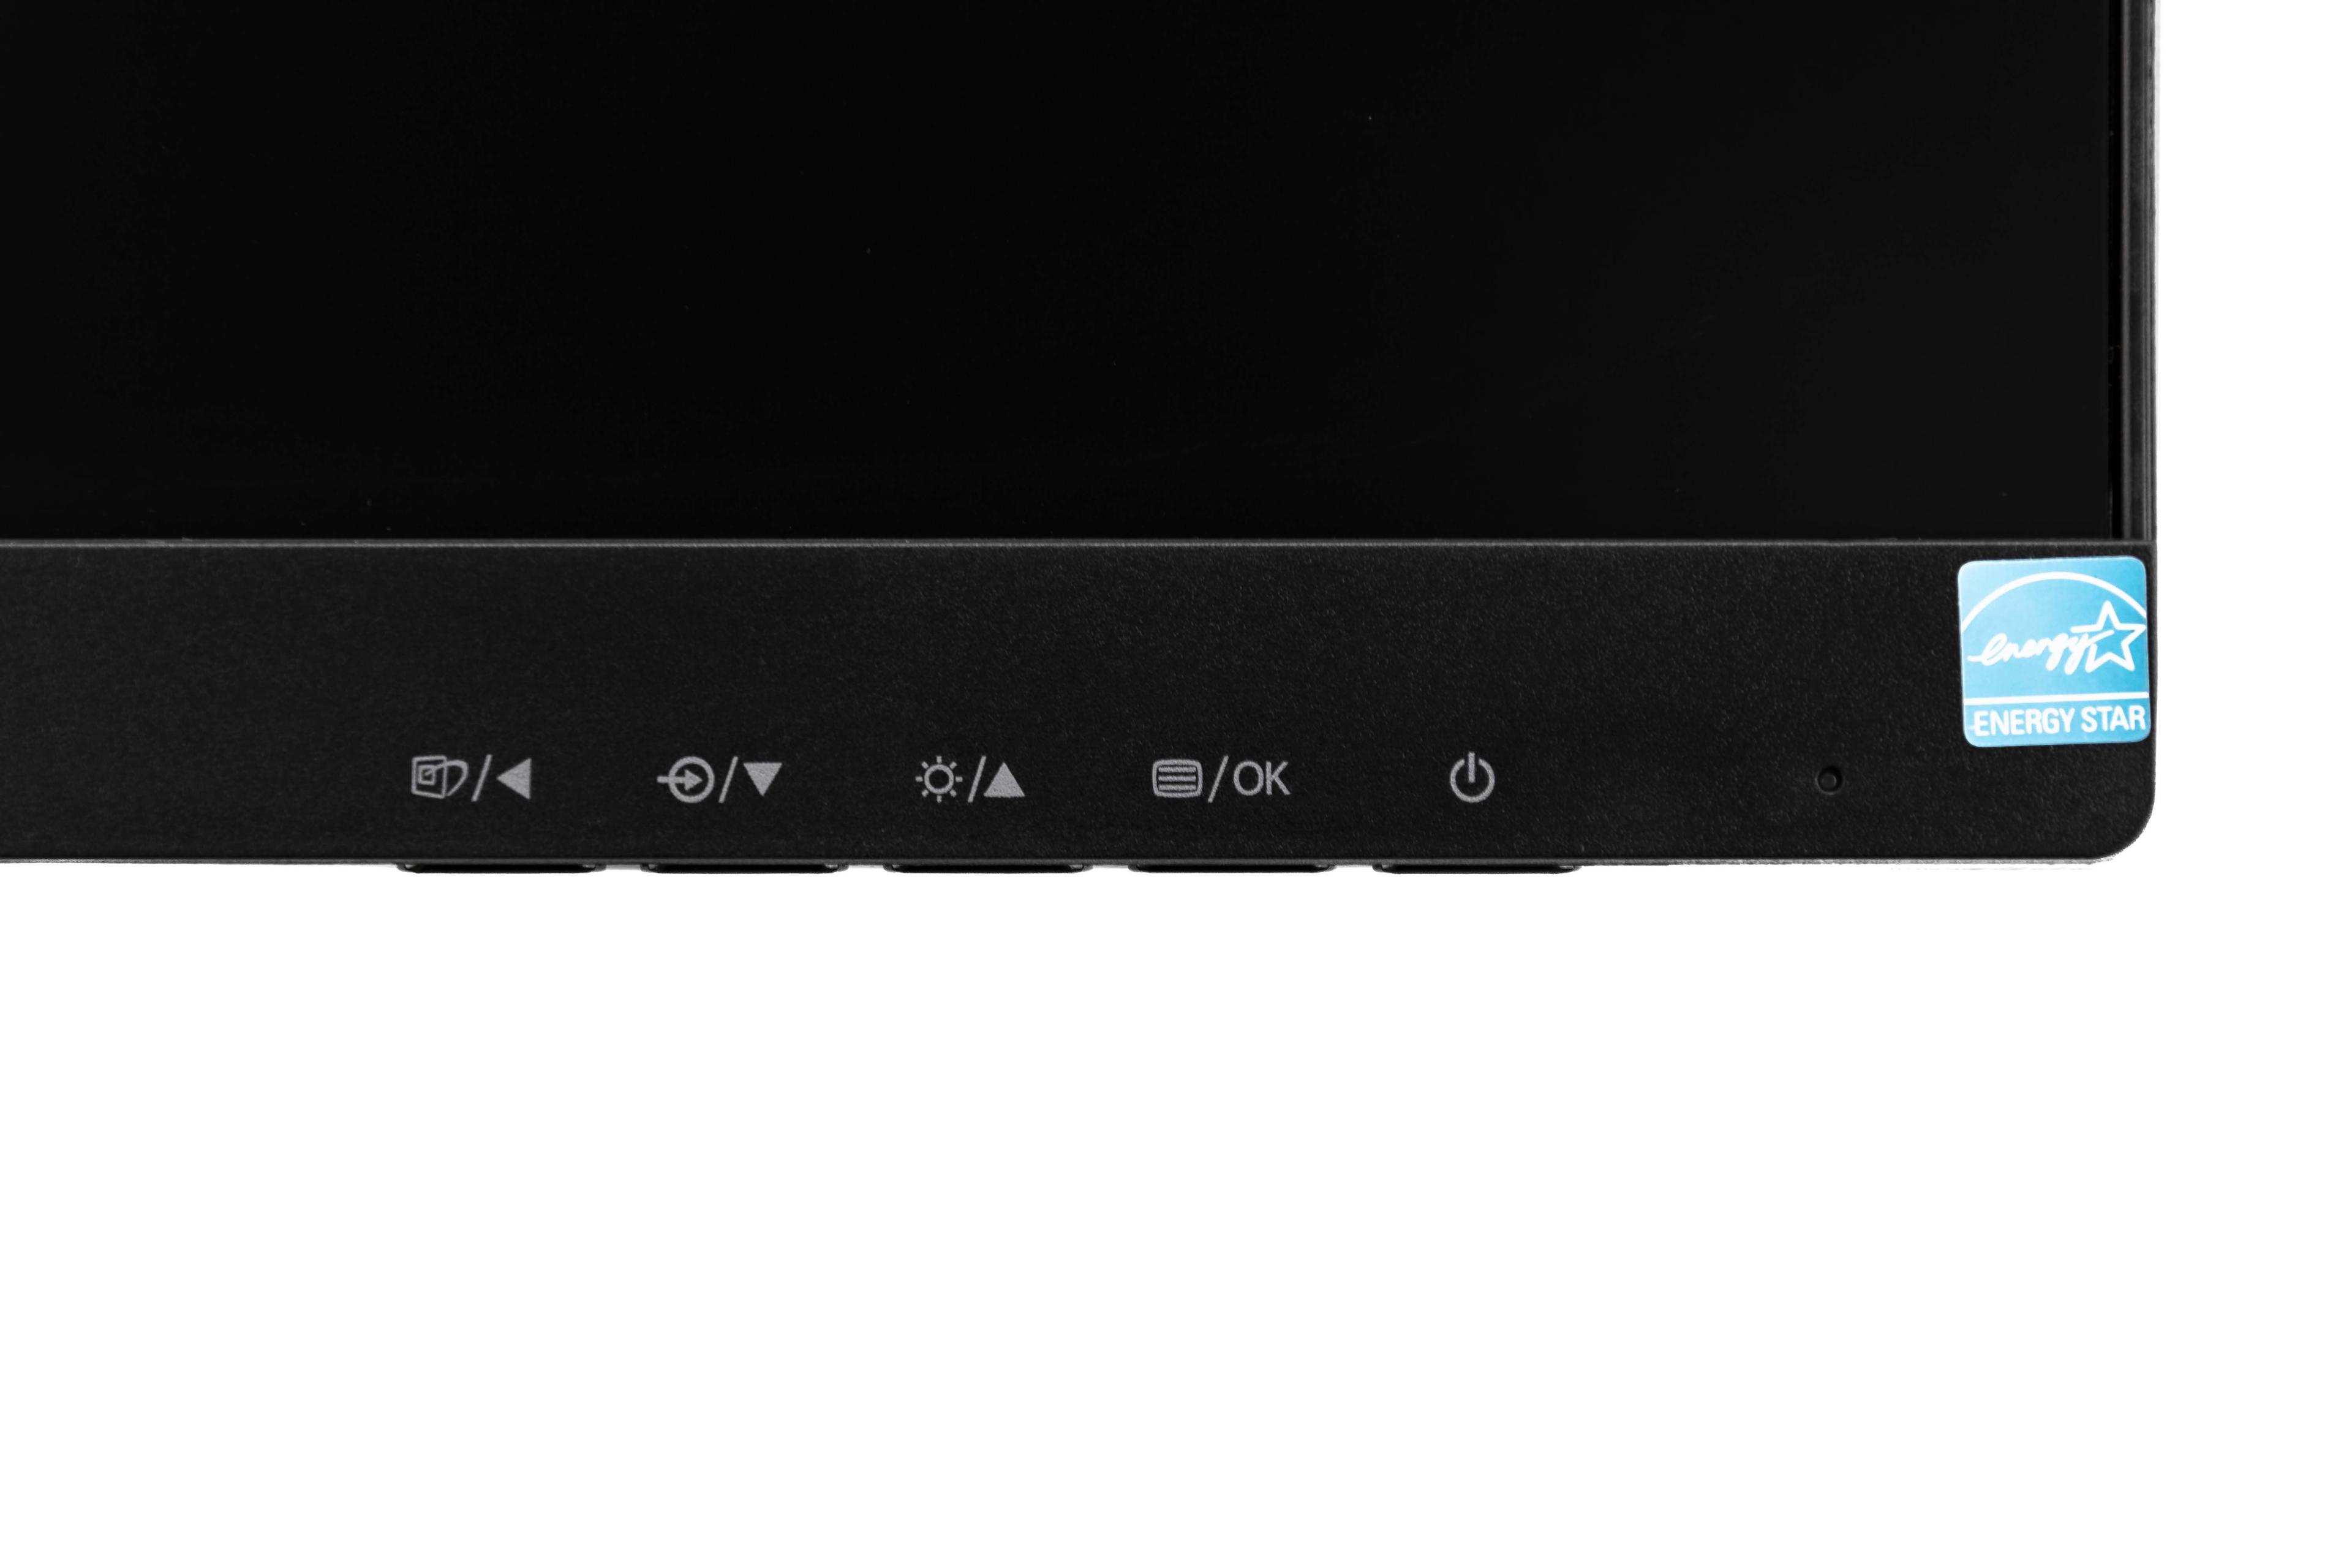 Monitor Philips 273V7QDSB/00 (27"; IPS/PLS; FullHD 1920x1080; HDMI, VGA; kolor czarny)